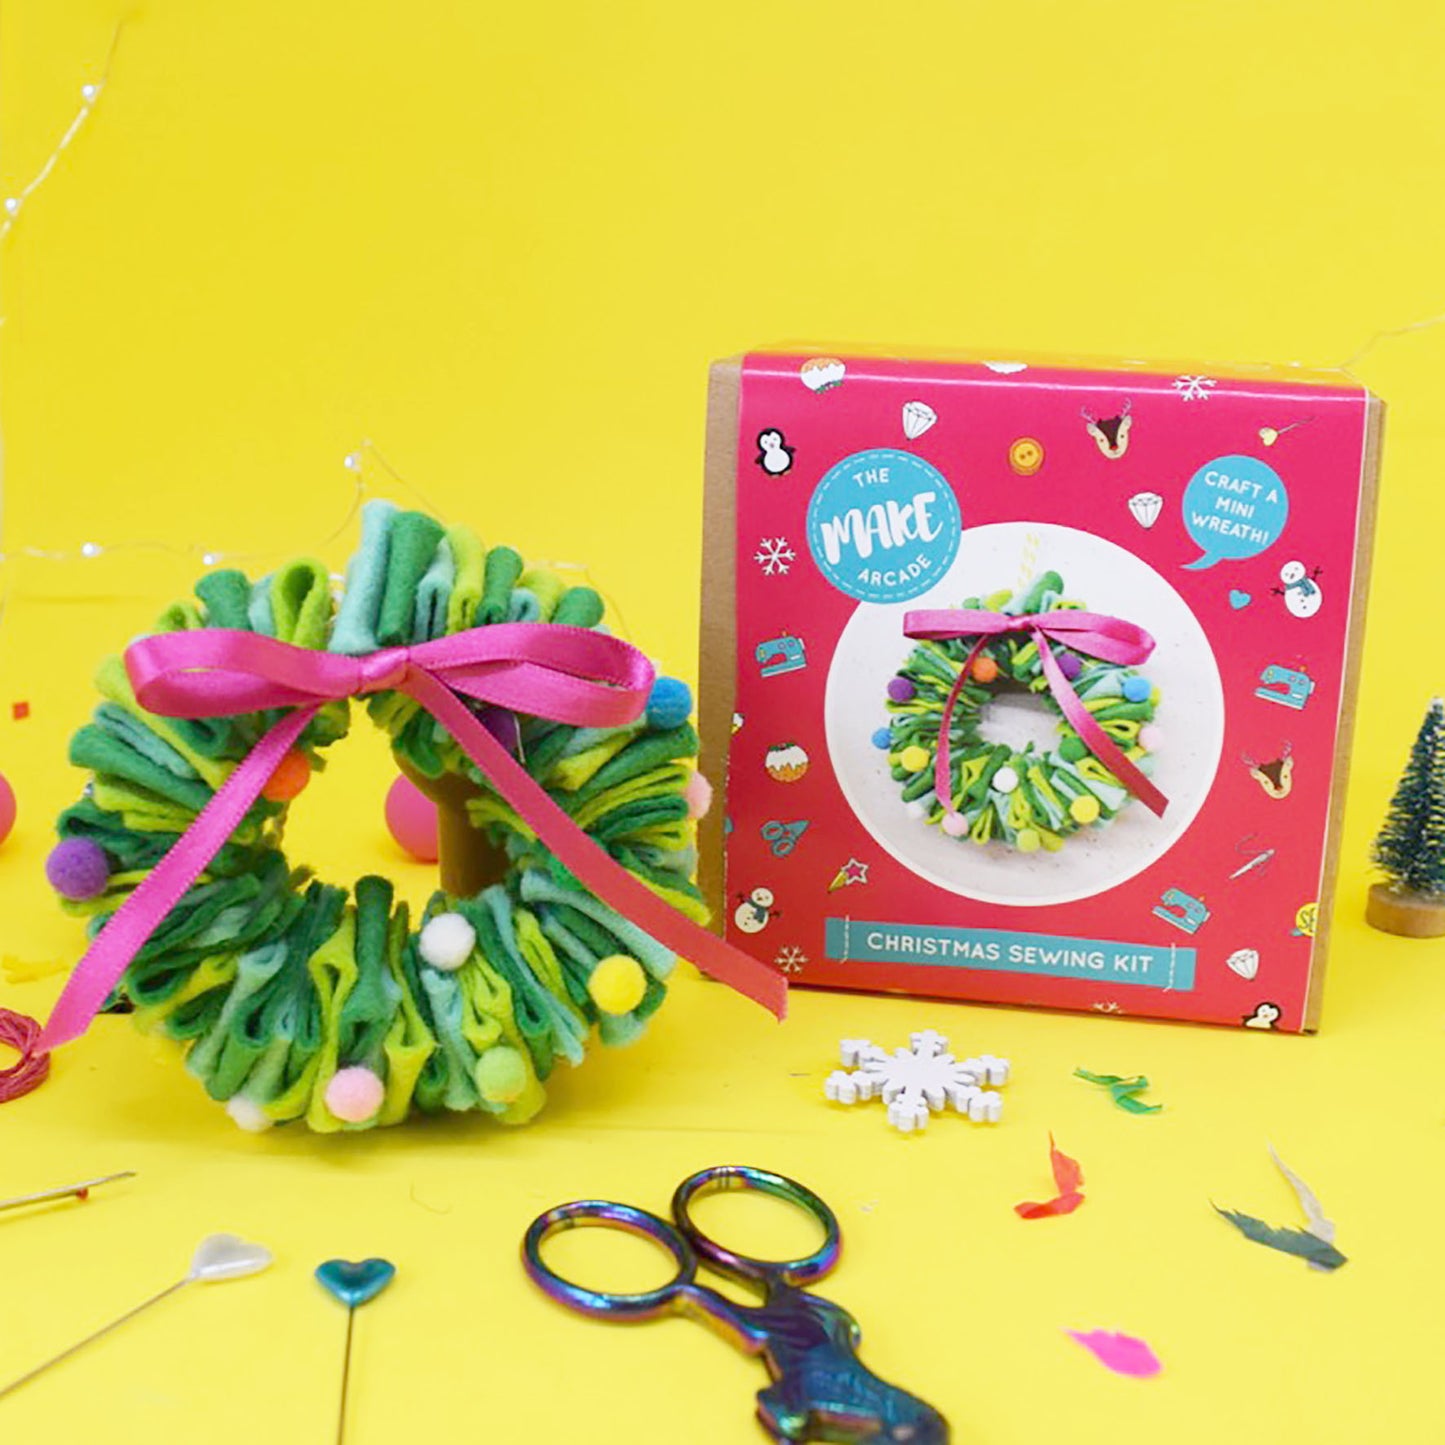 'Pom Pom Wreath' Mini Wreath Craft Kit